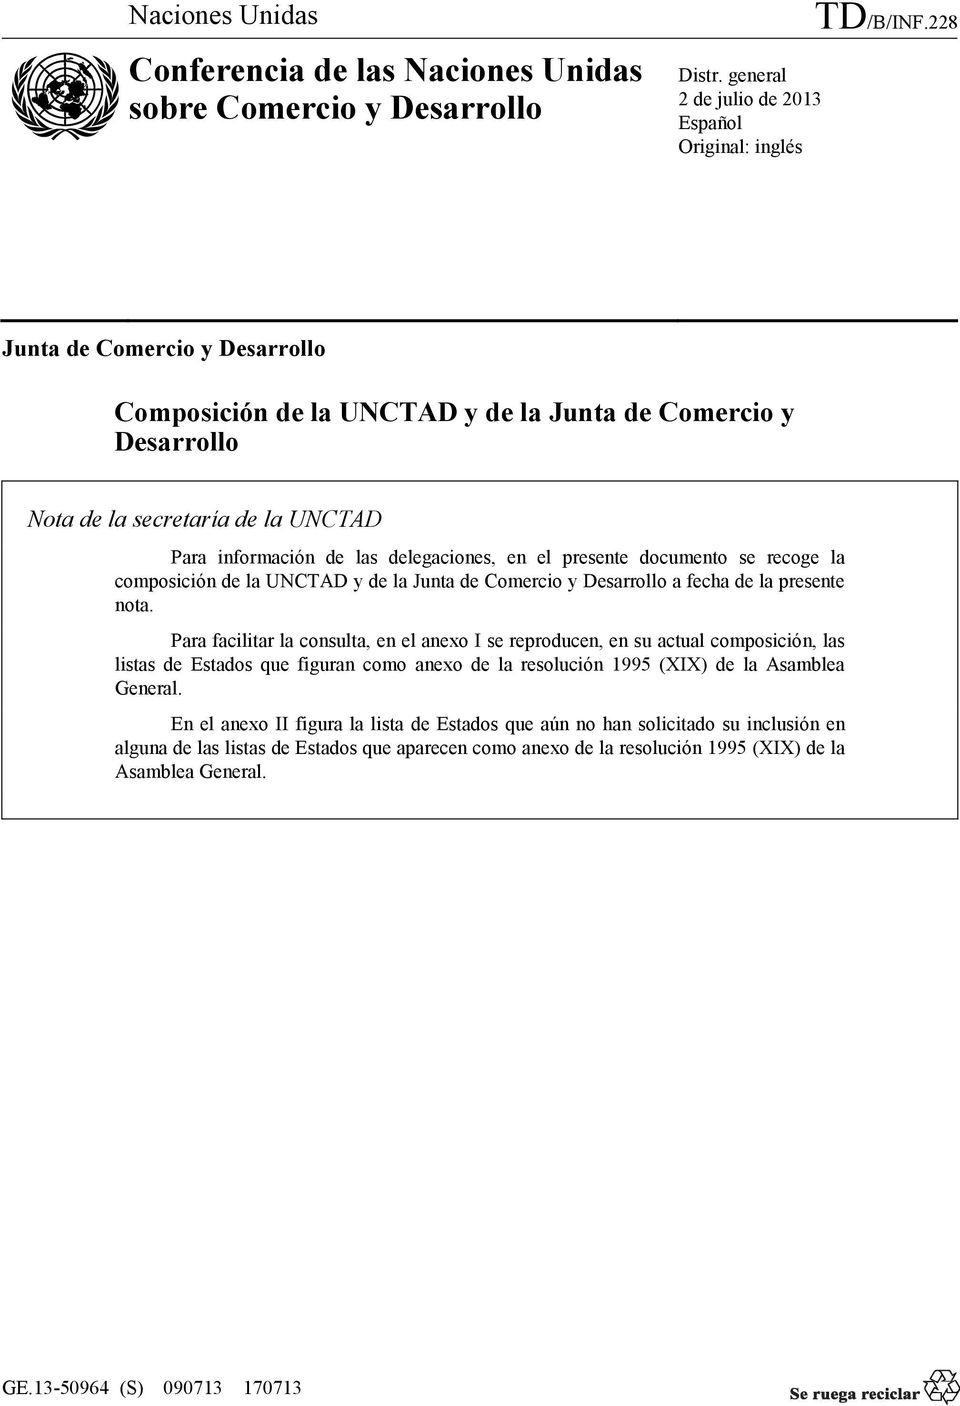 recoge la composición de la UNCTAD y de la Junta de Comercio y Desarrollo a fecha de la presente nota.